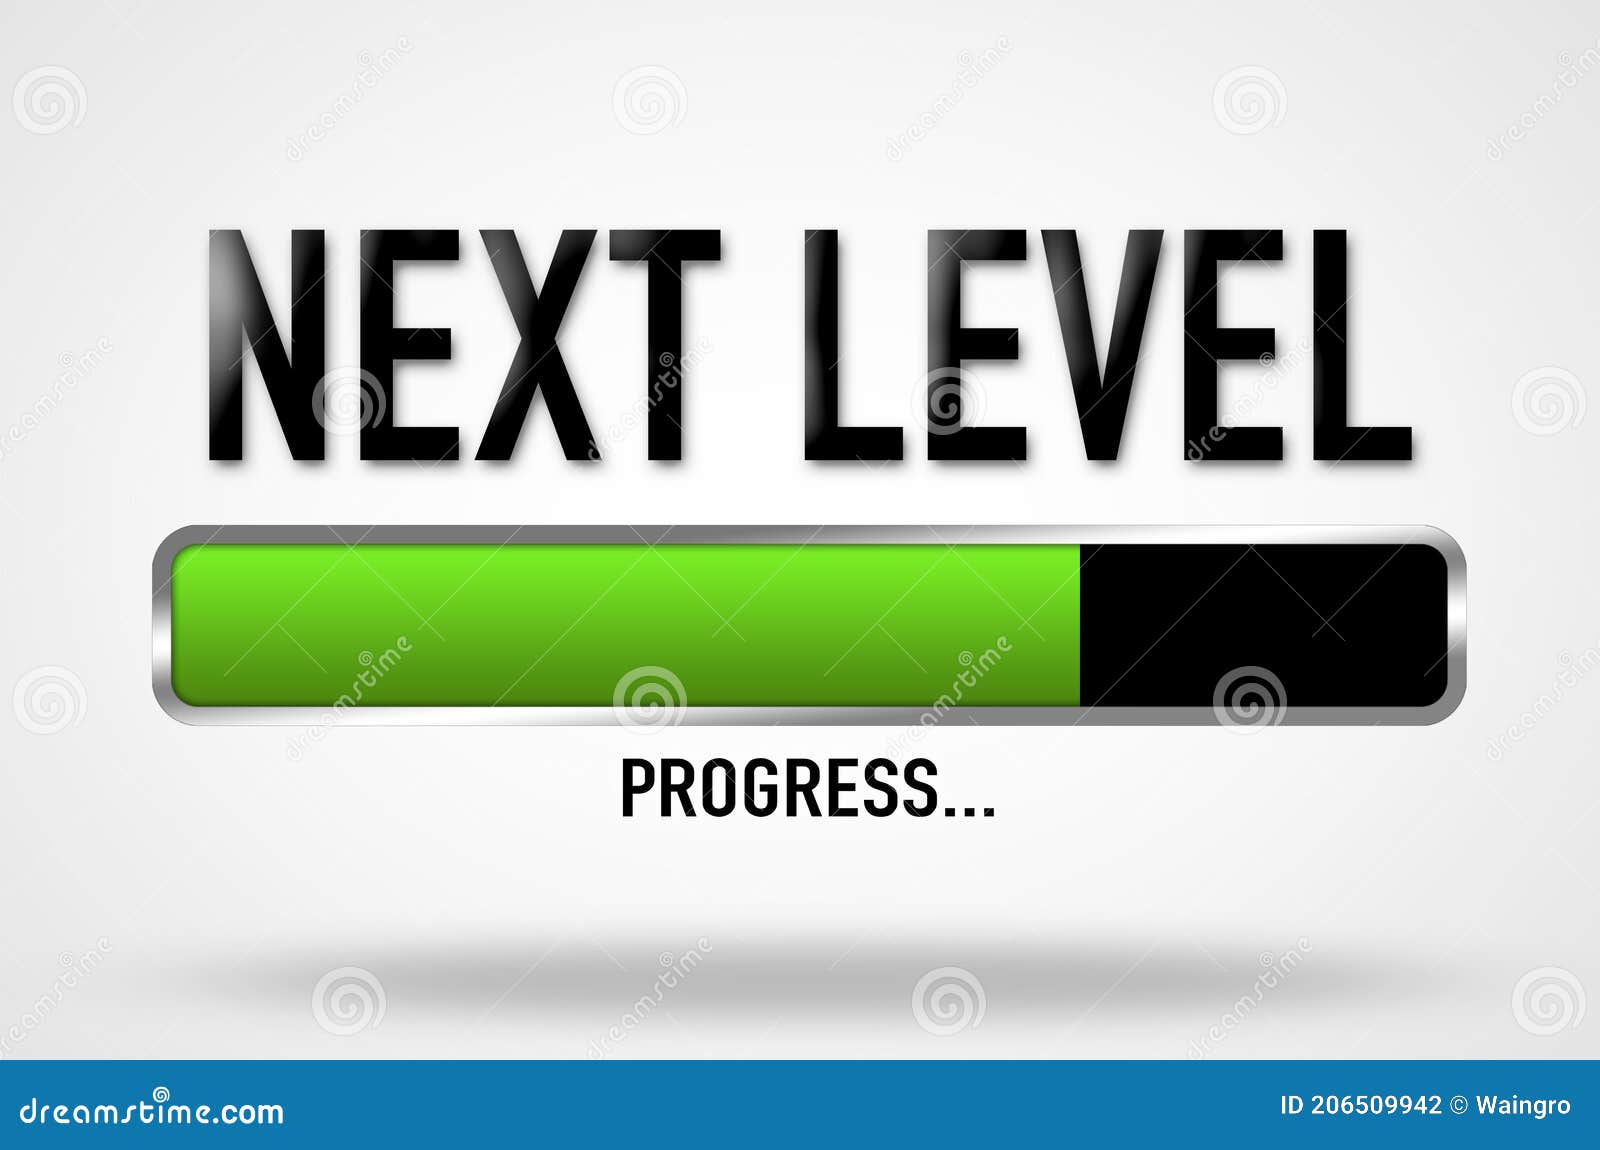 next level - progress bar 